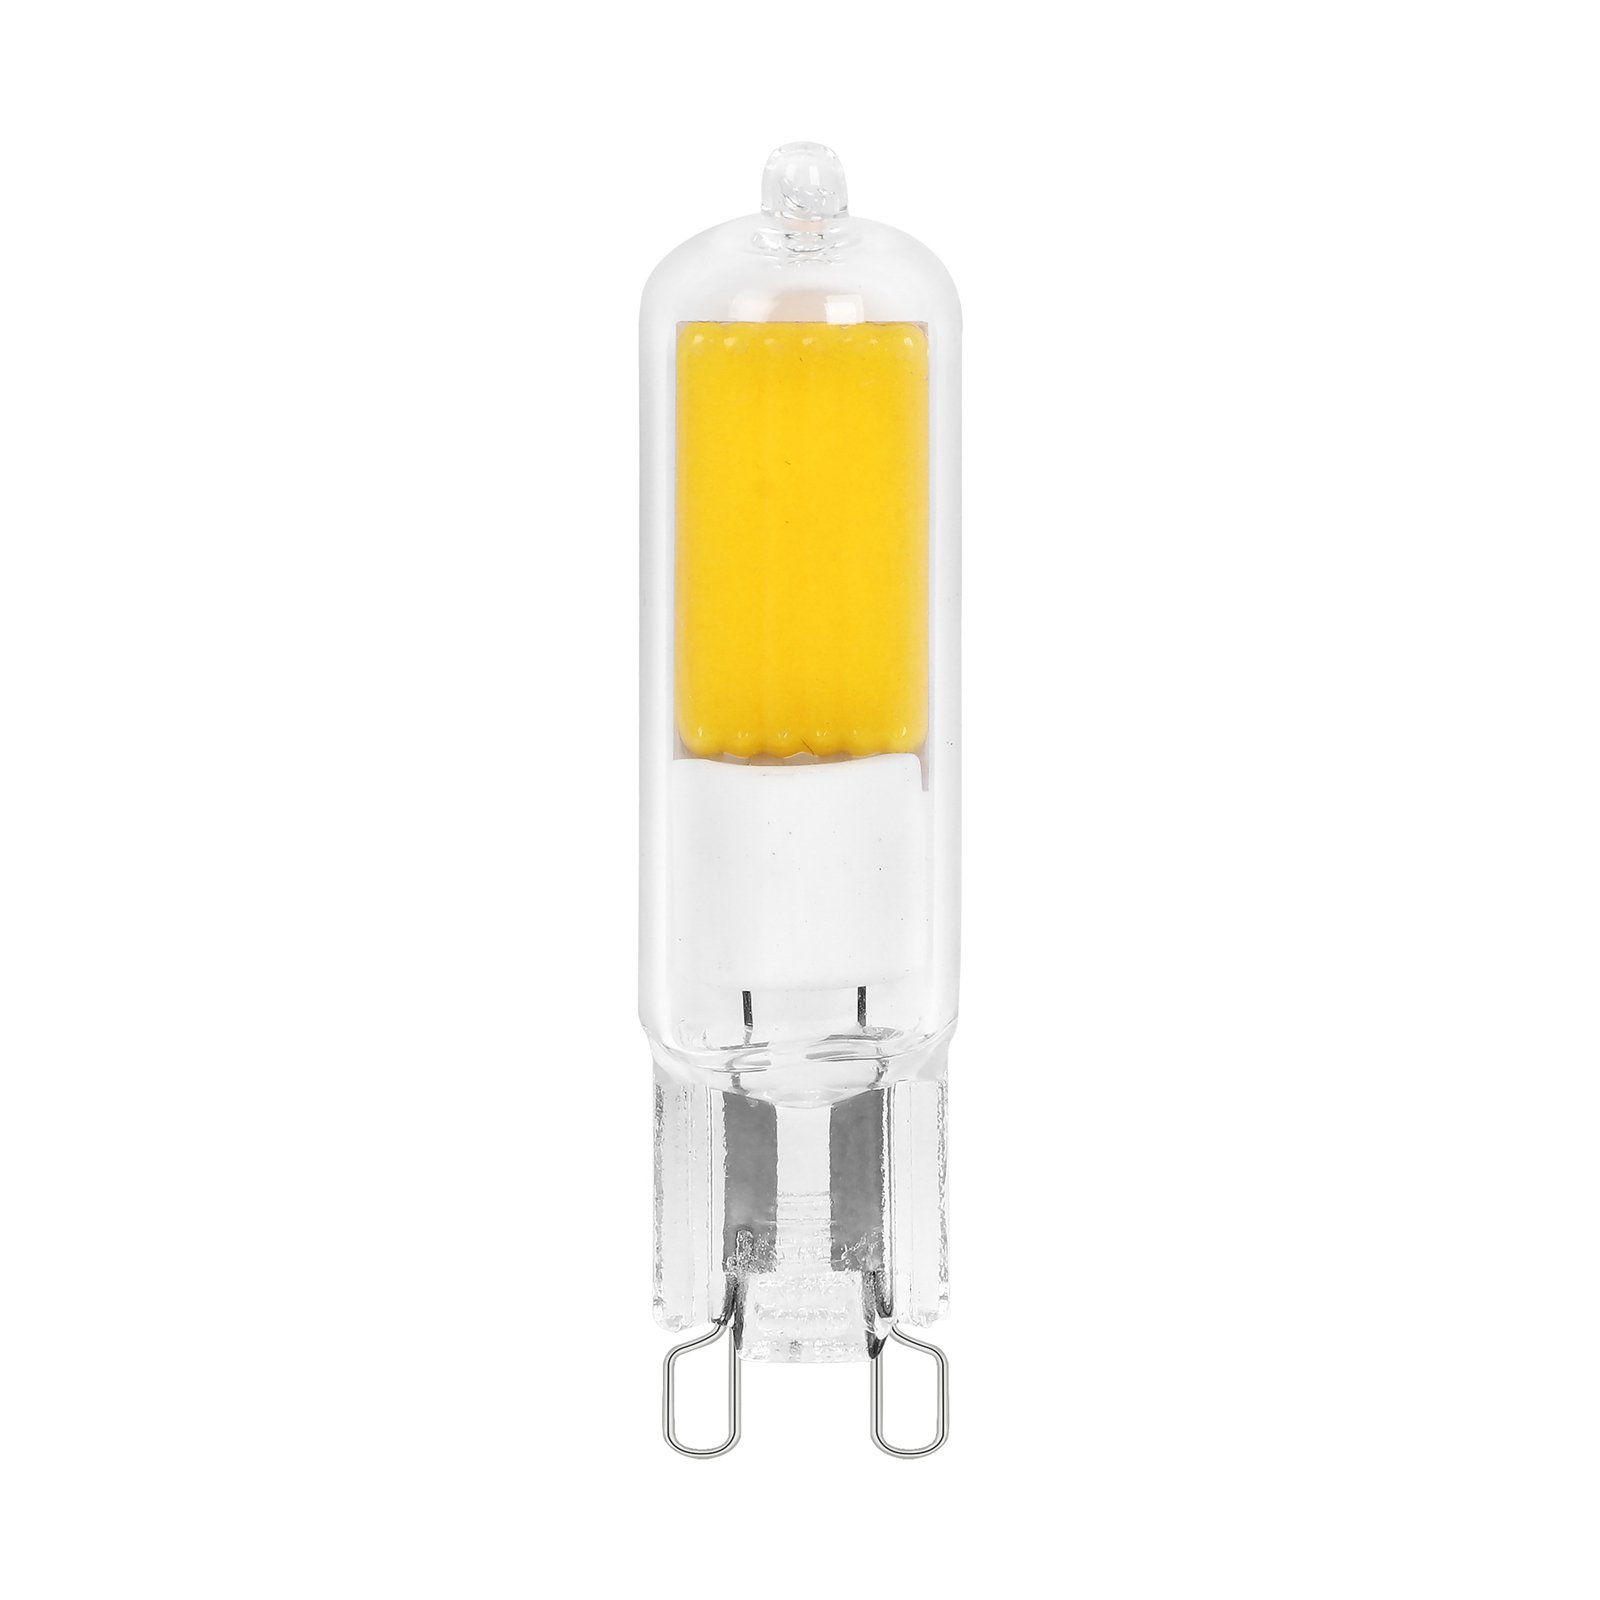 Arcchio bi-pin LED bulb, G9, 4W, 3000K, set of 10